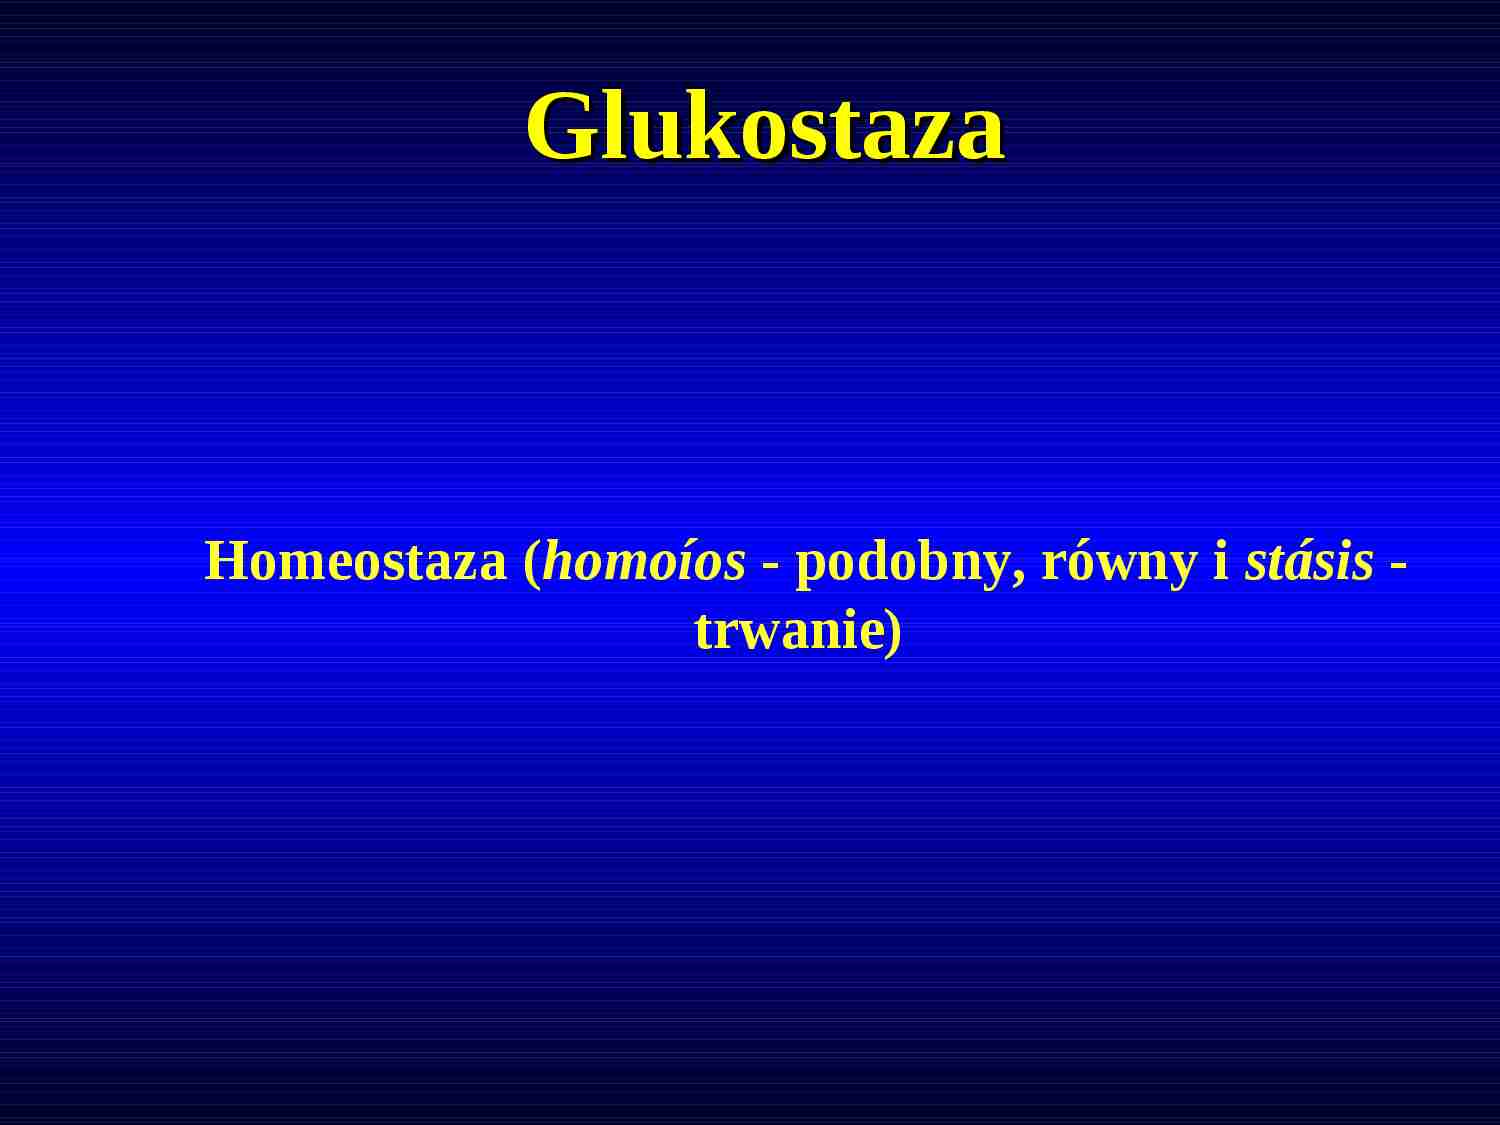 Fizjologia molekularna - glukostaza - homeostaza - strona 1